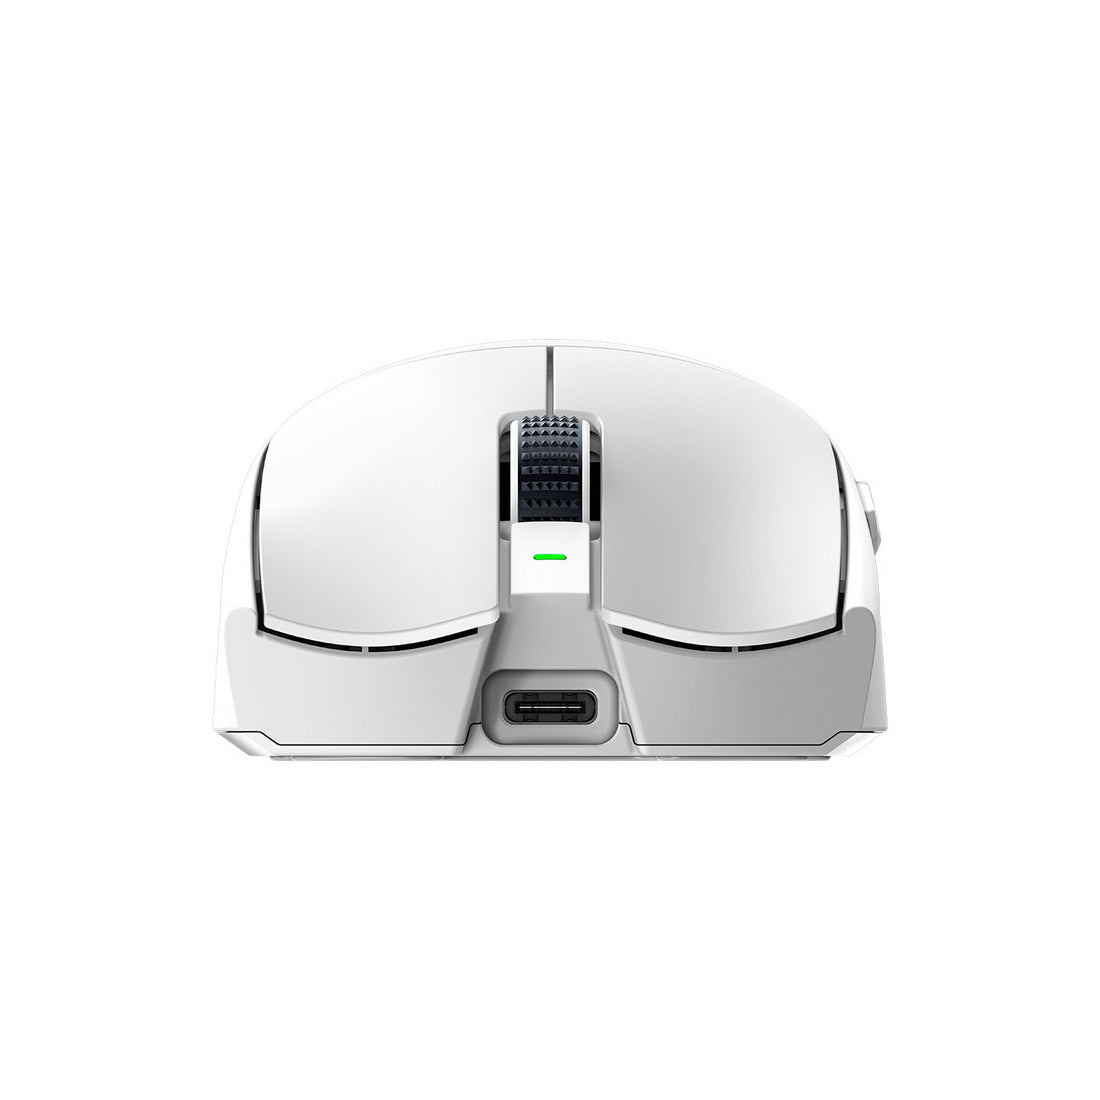 Razer Viper V3 Pro Optical Wireless White Gaming Mouse - White - فأرة